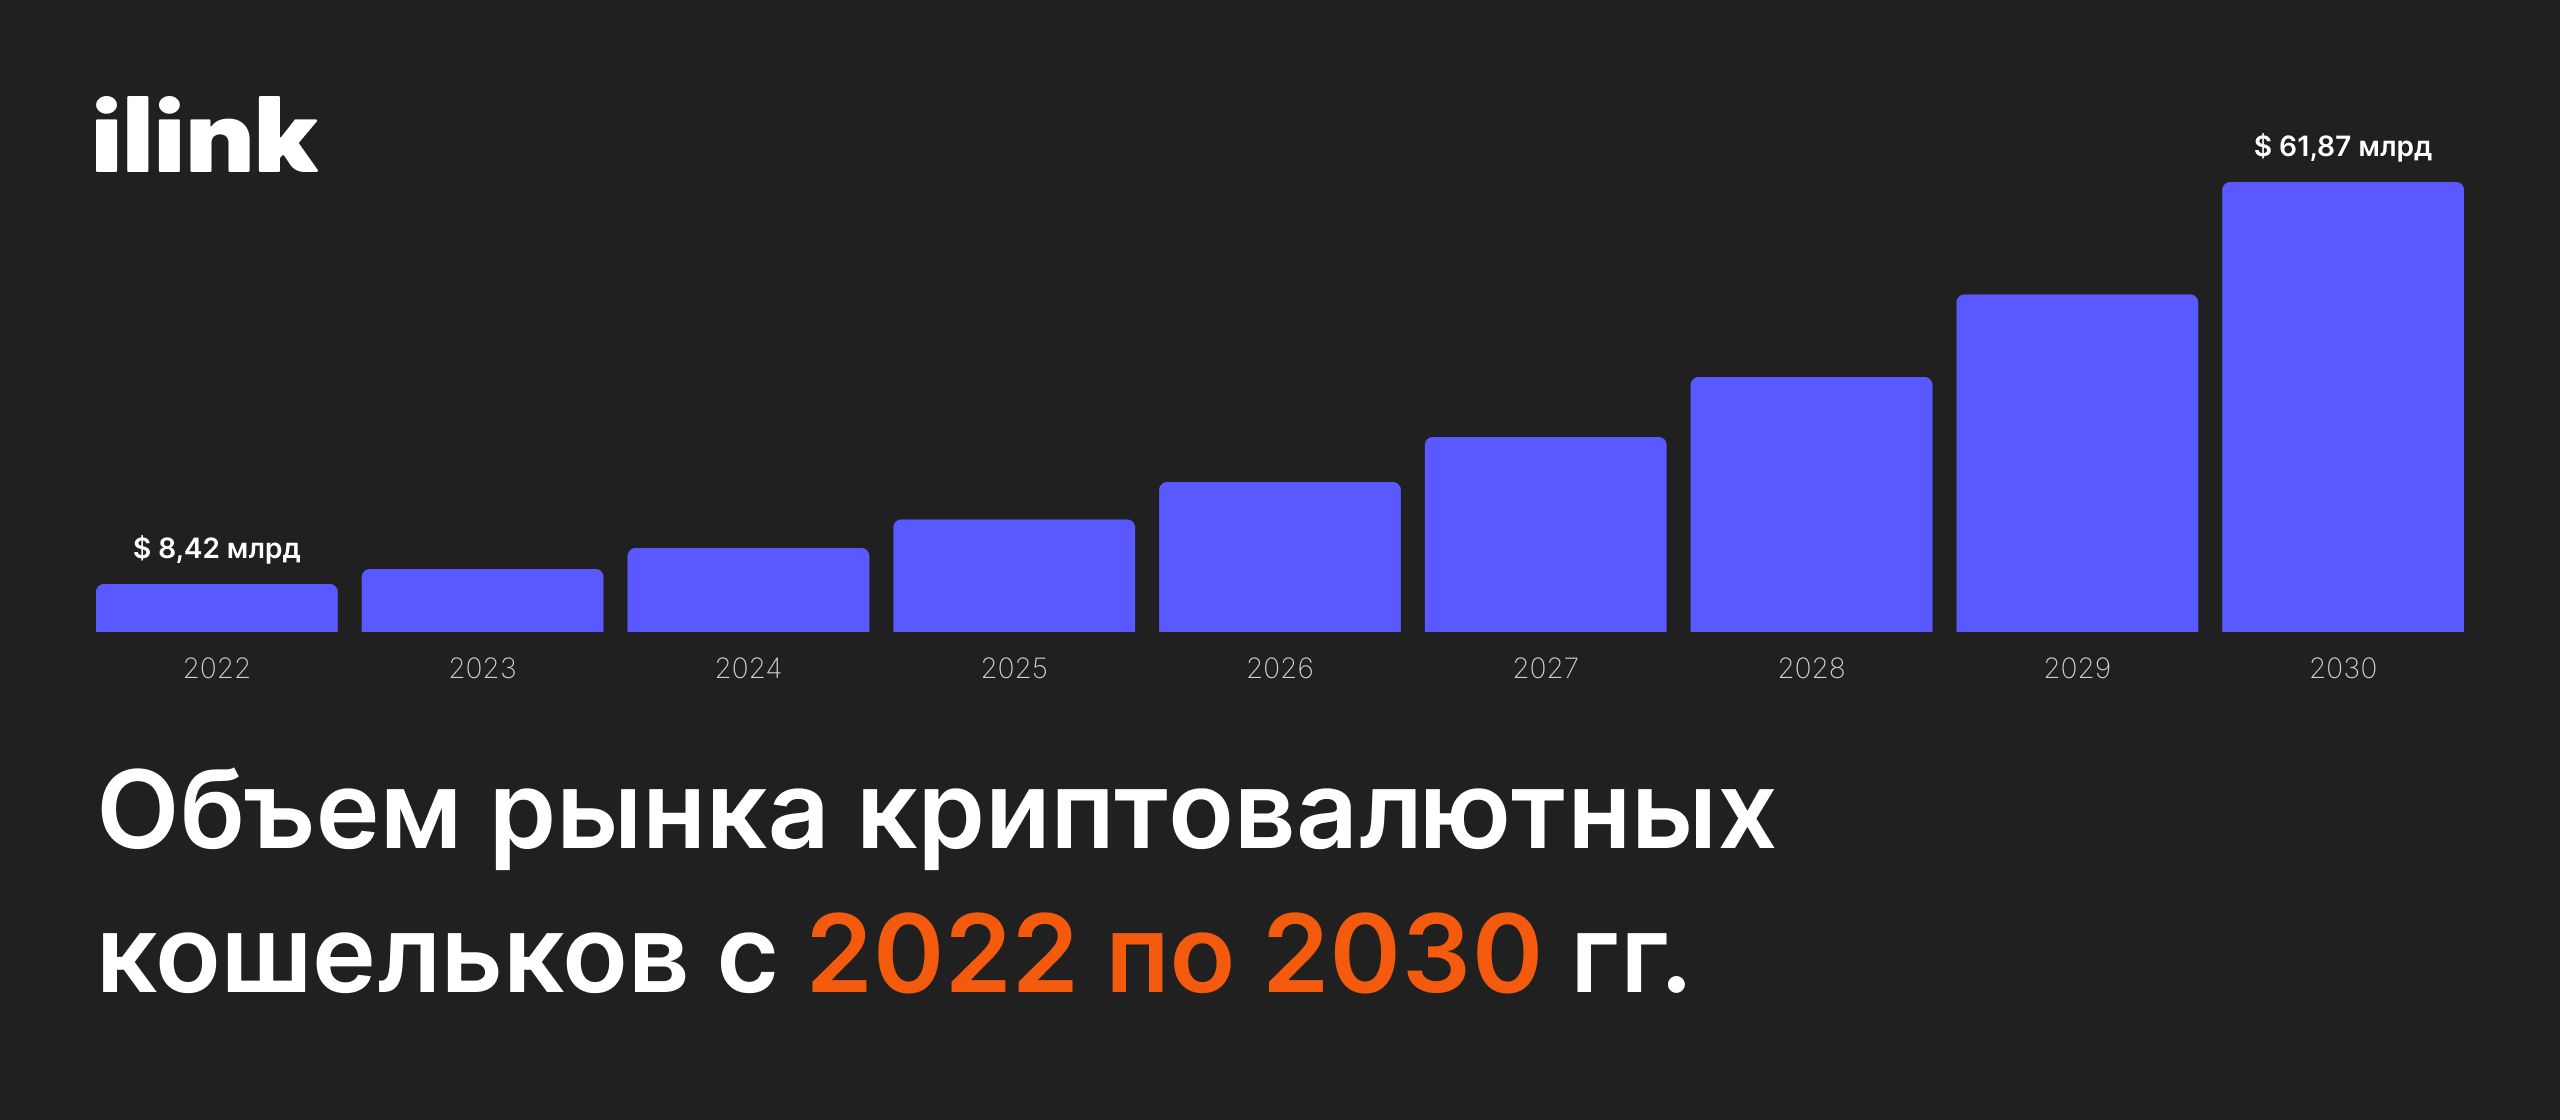 Объем рынка криптовалютных кошельков с 2022 по 2030 гг. image ilink